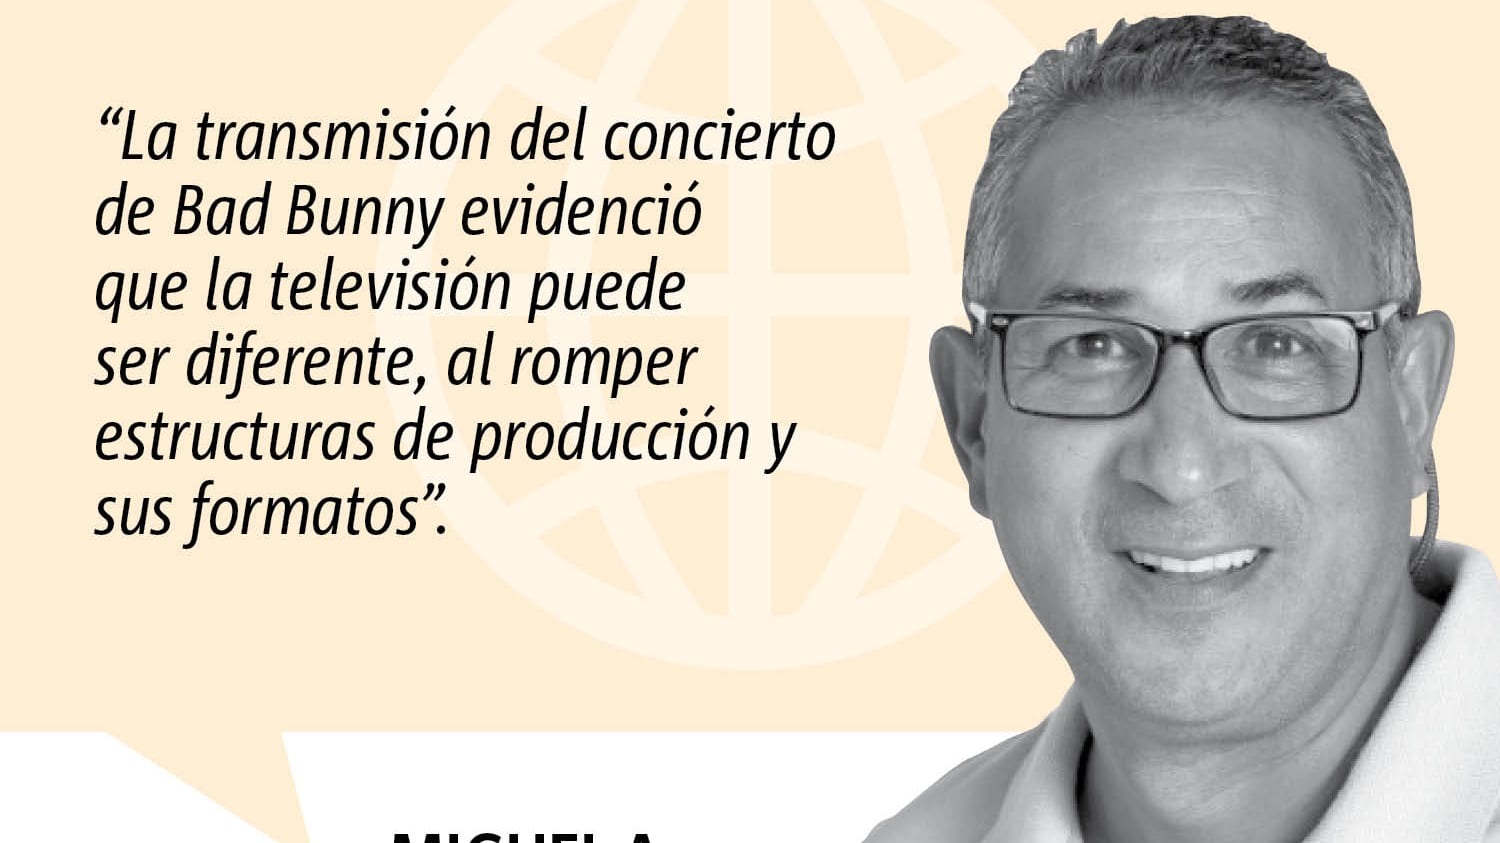 Columna de opinión de Miguel A. Rosa sobre la transmisión en televisión del concierto de Bad Bunny.